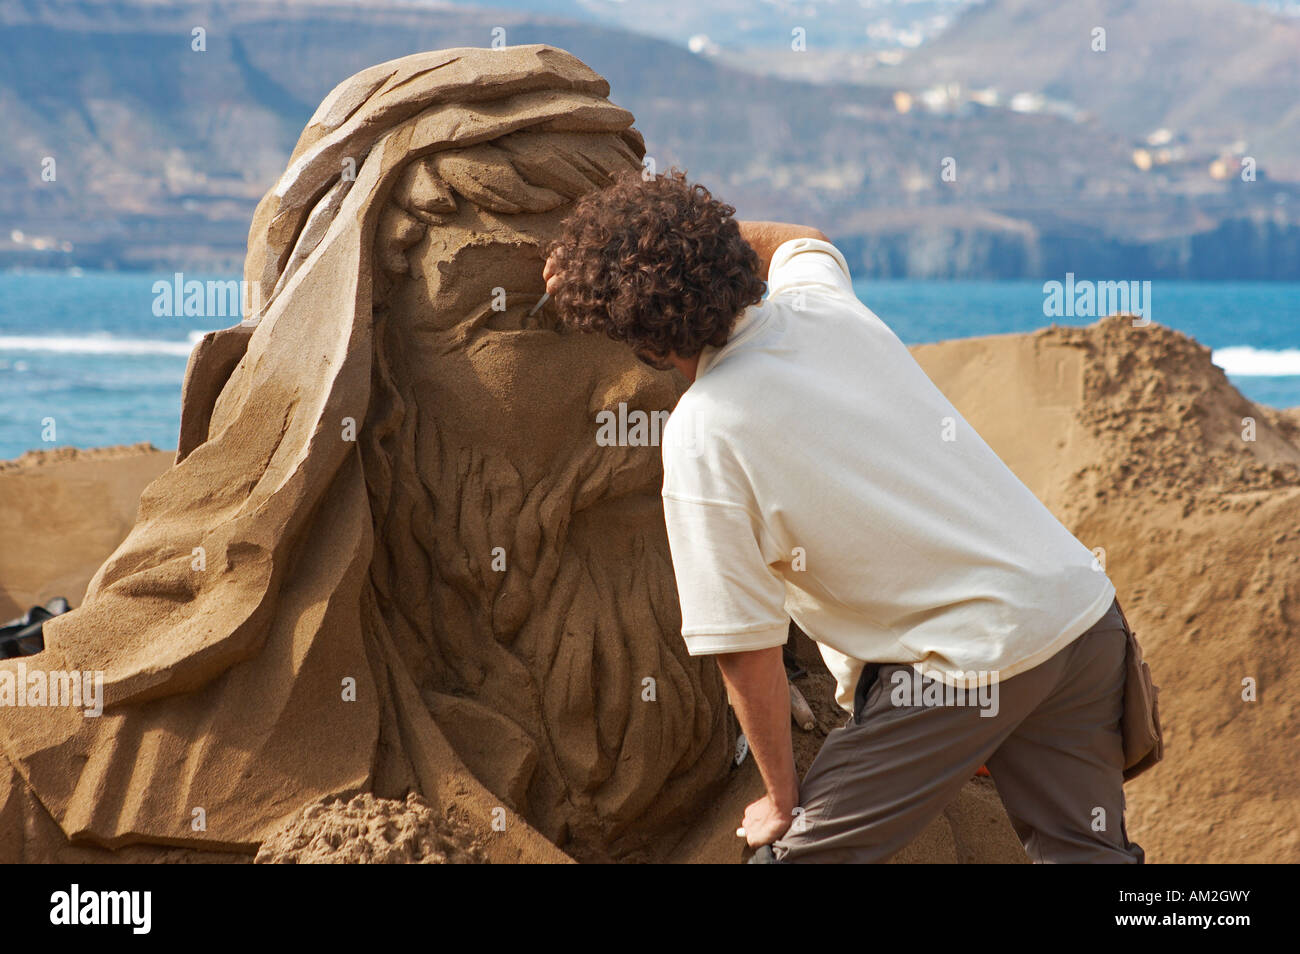 Scultore di sabbia lavorando sulla scena della natività, spiaggia Las Canteras, Gran Canaria, Isole canarie, Spagna, Europa Foto Stock